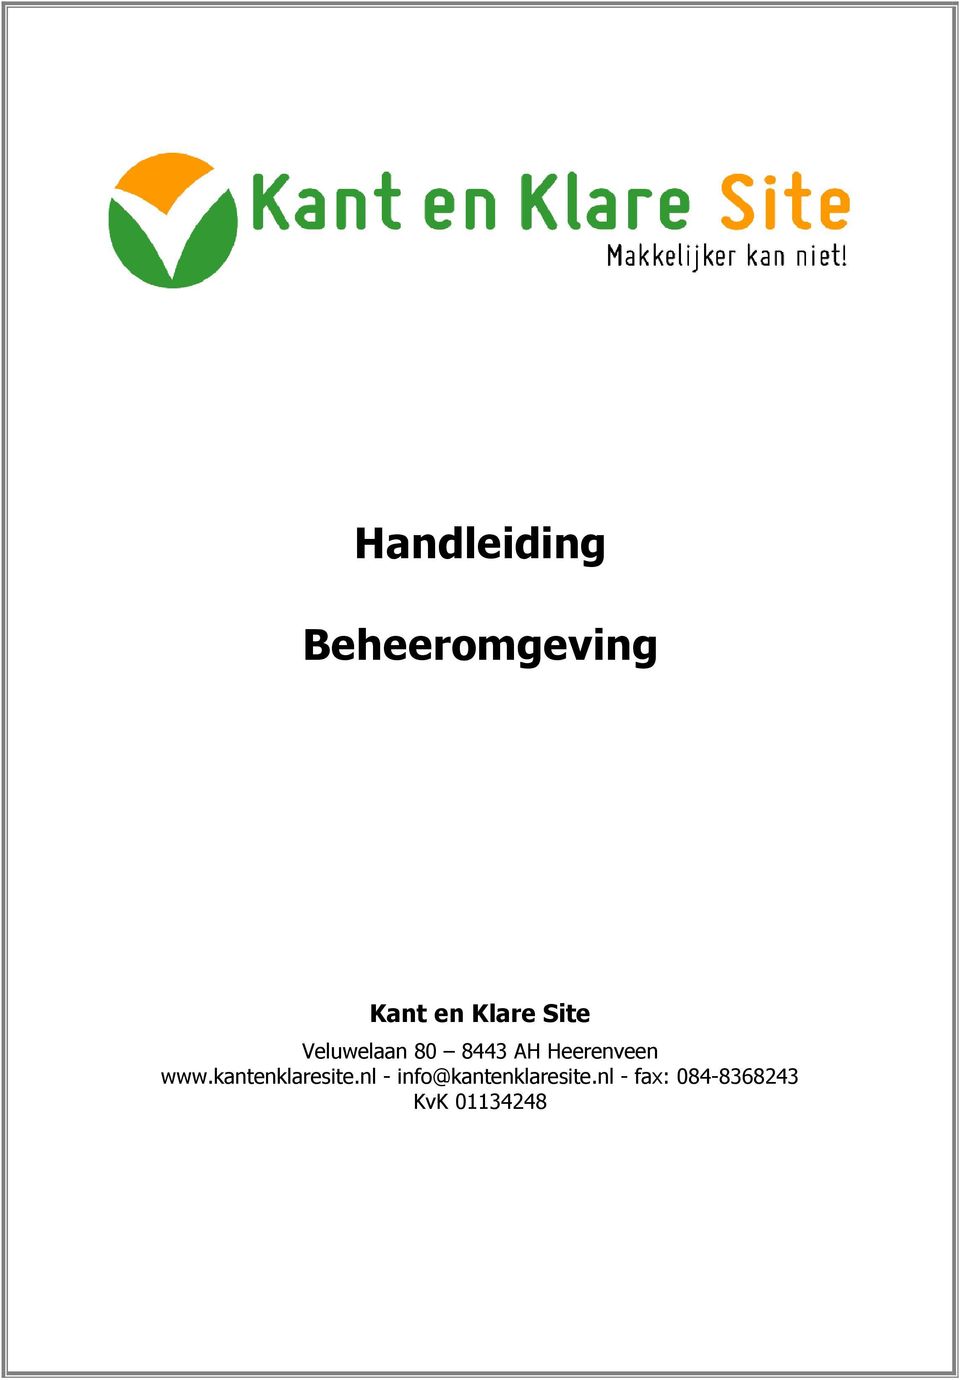 Heerenveen www.kantenklaresite.